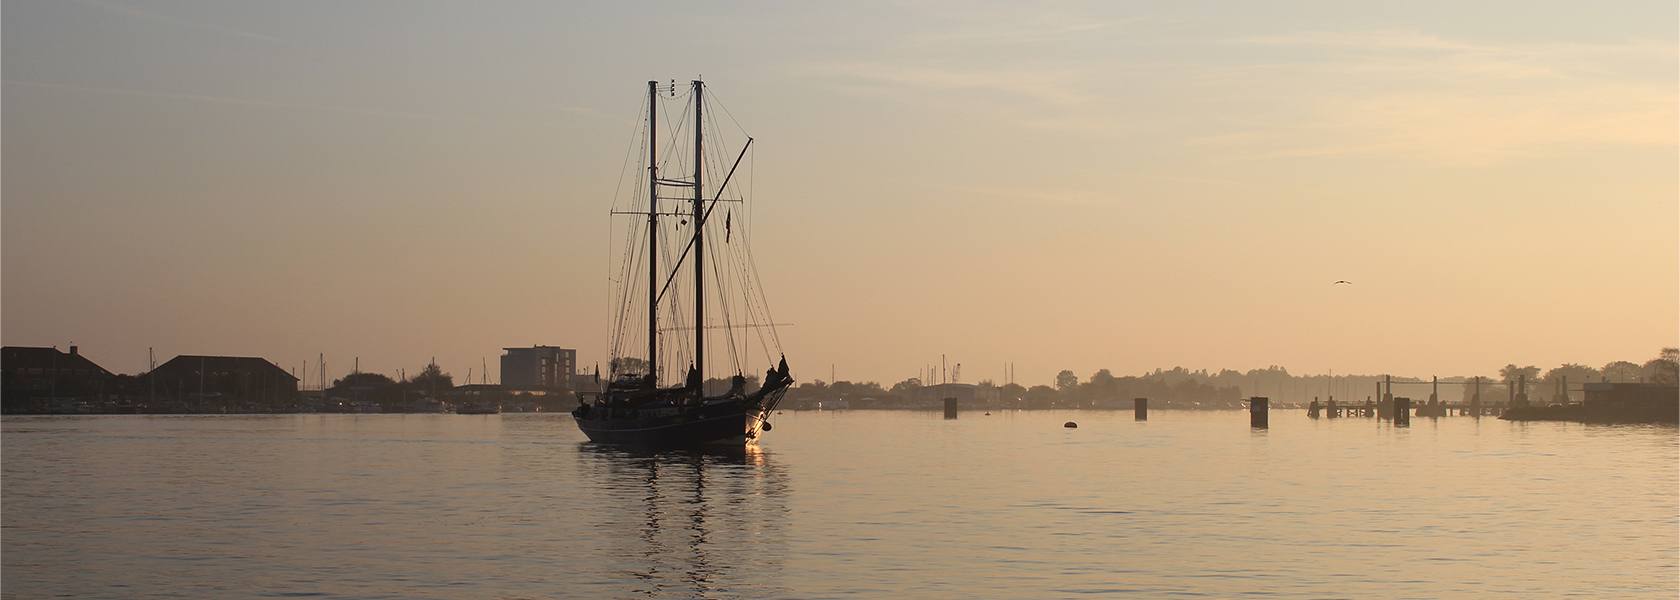 Schiff im Sonnenuntergang, © Die Nordsee GmbH, Katja Benke